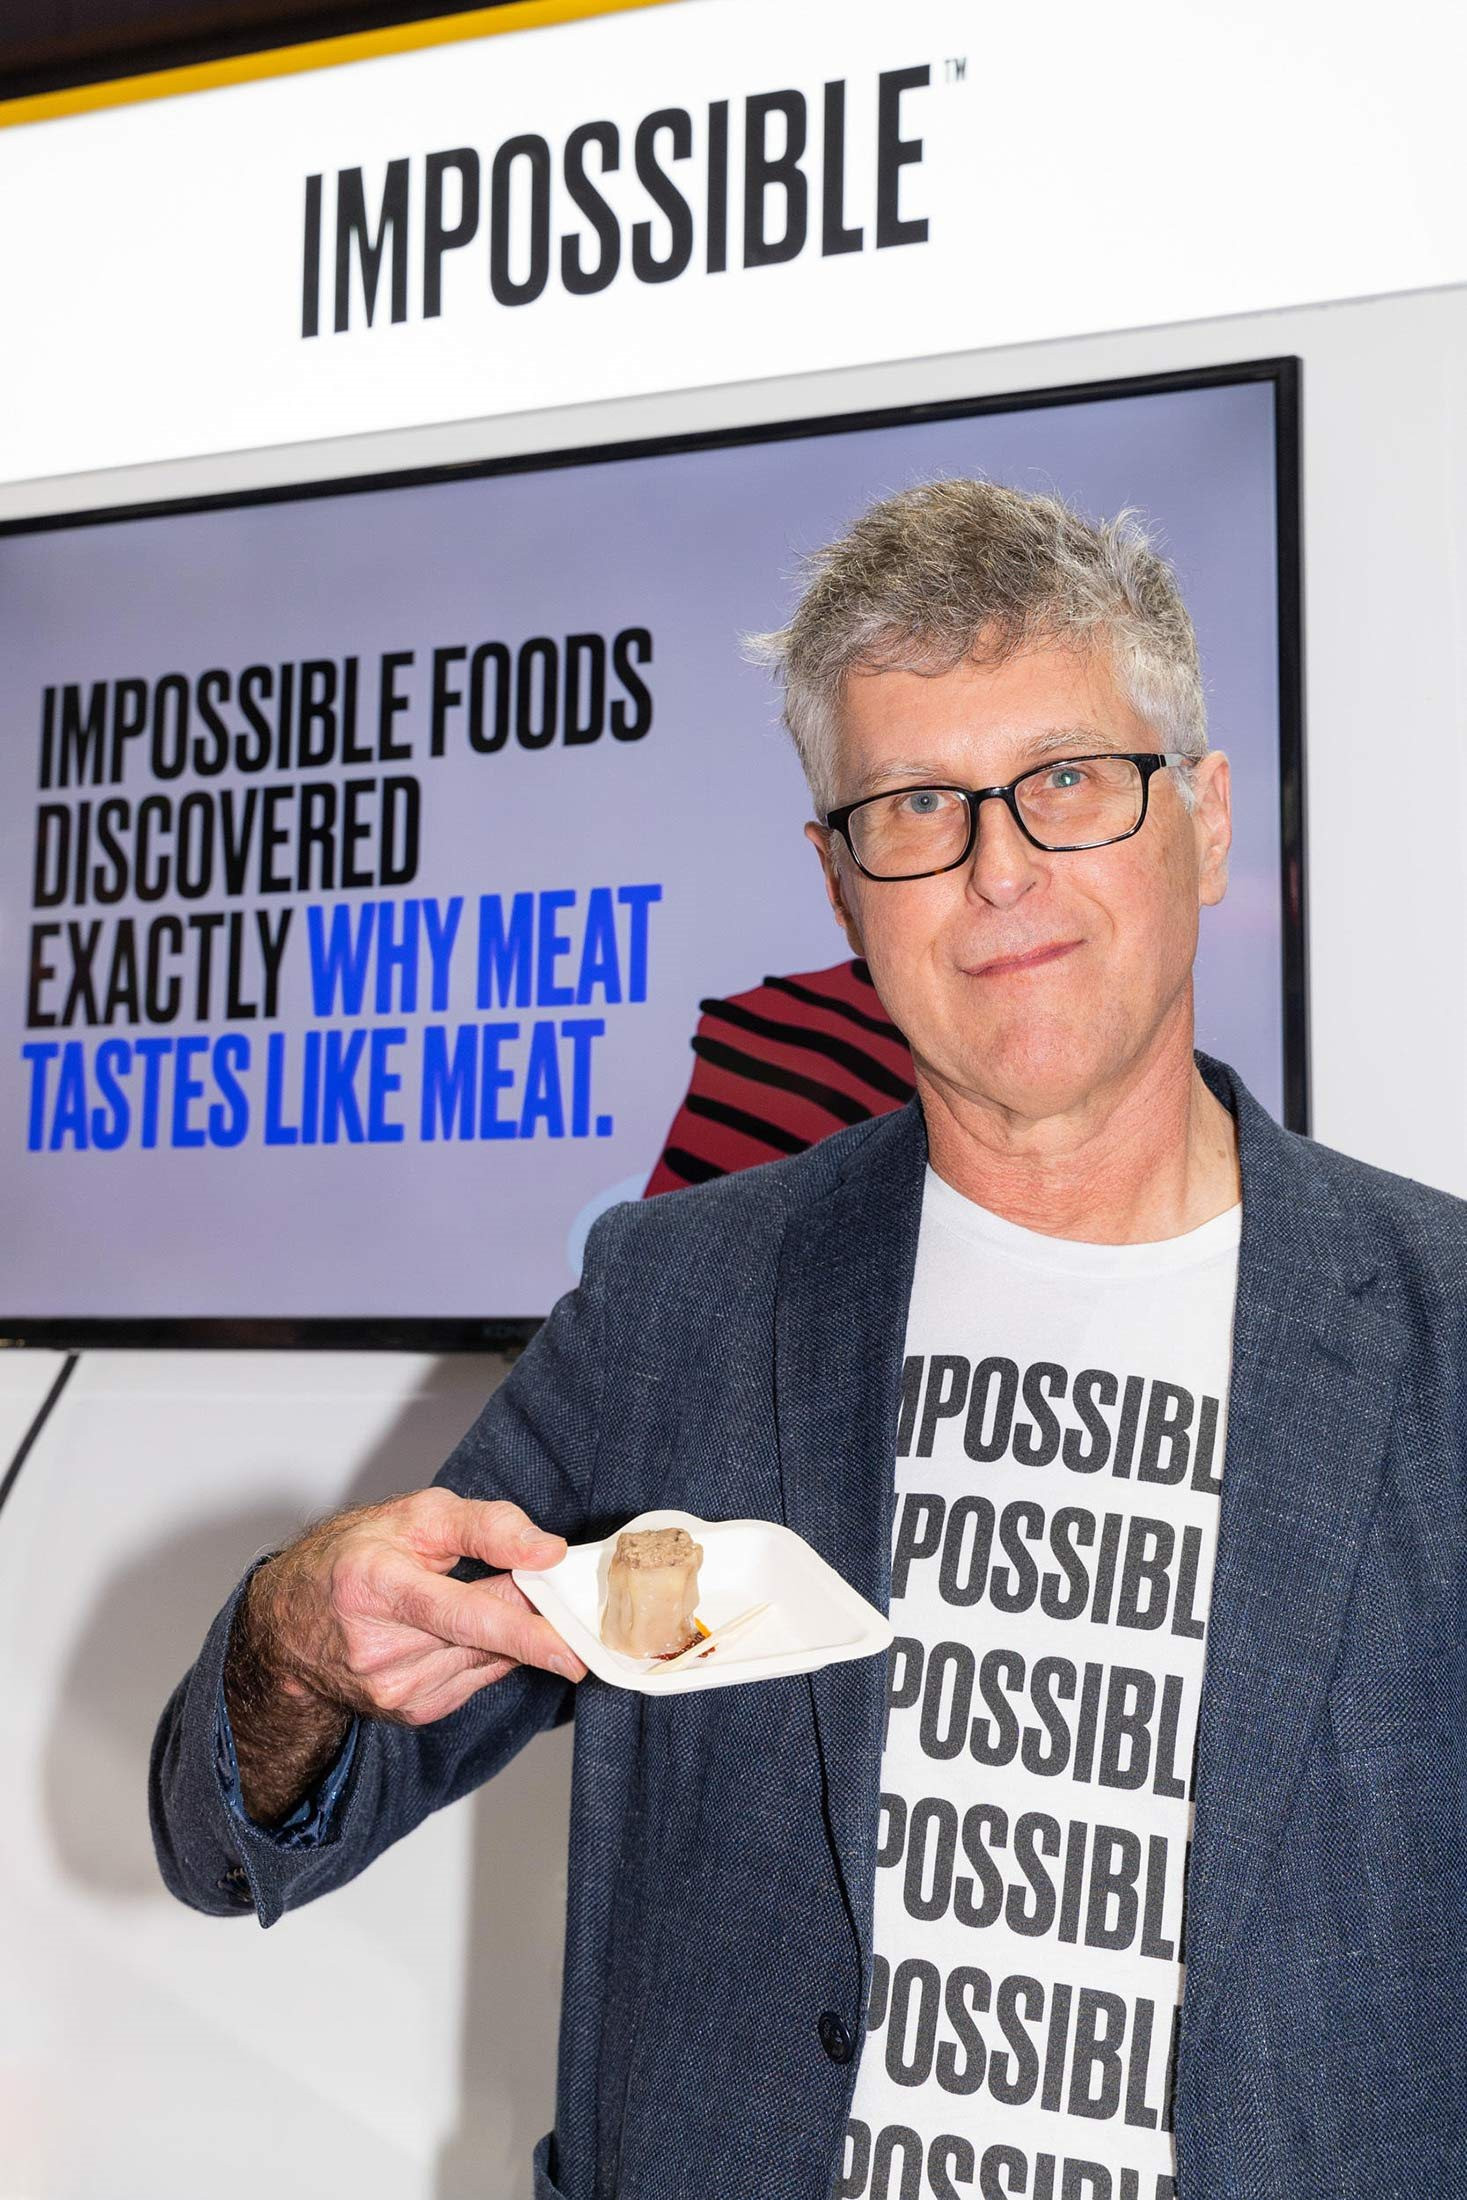 Thịt chay: Kỳ vọng thực phẩm tốt cho sức khỏe, tạo nên cách mạng ngành của Bill Gates trở thành ‘cú lừa’ - Ảnh 5.